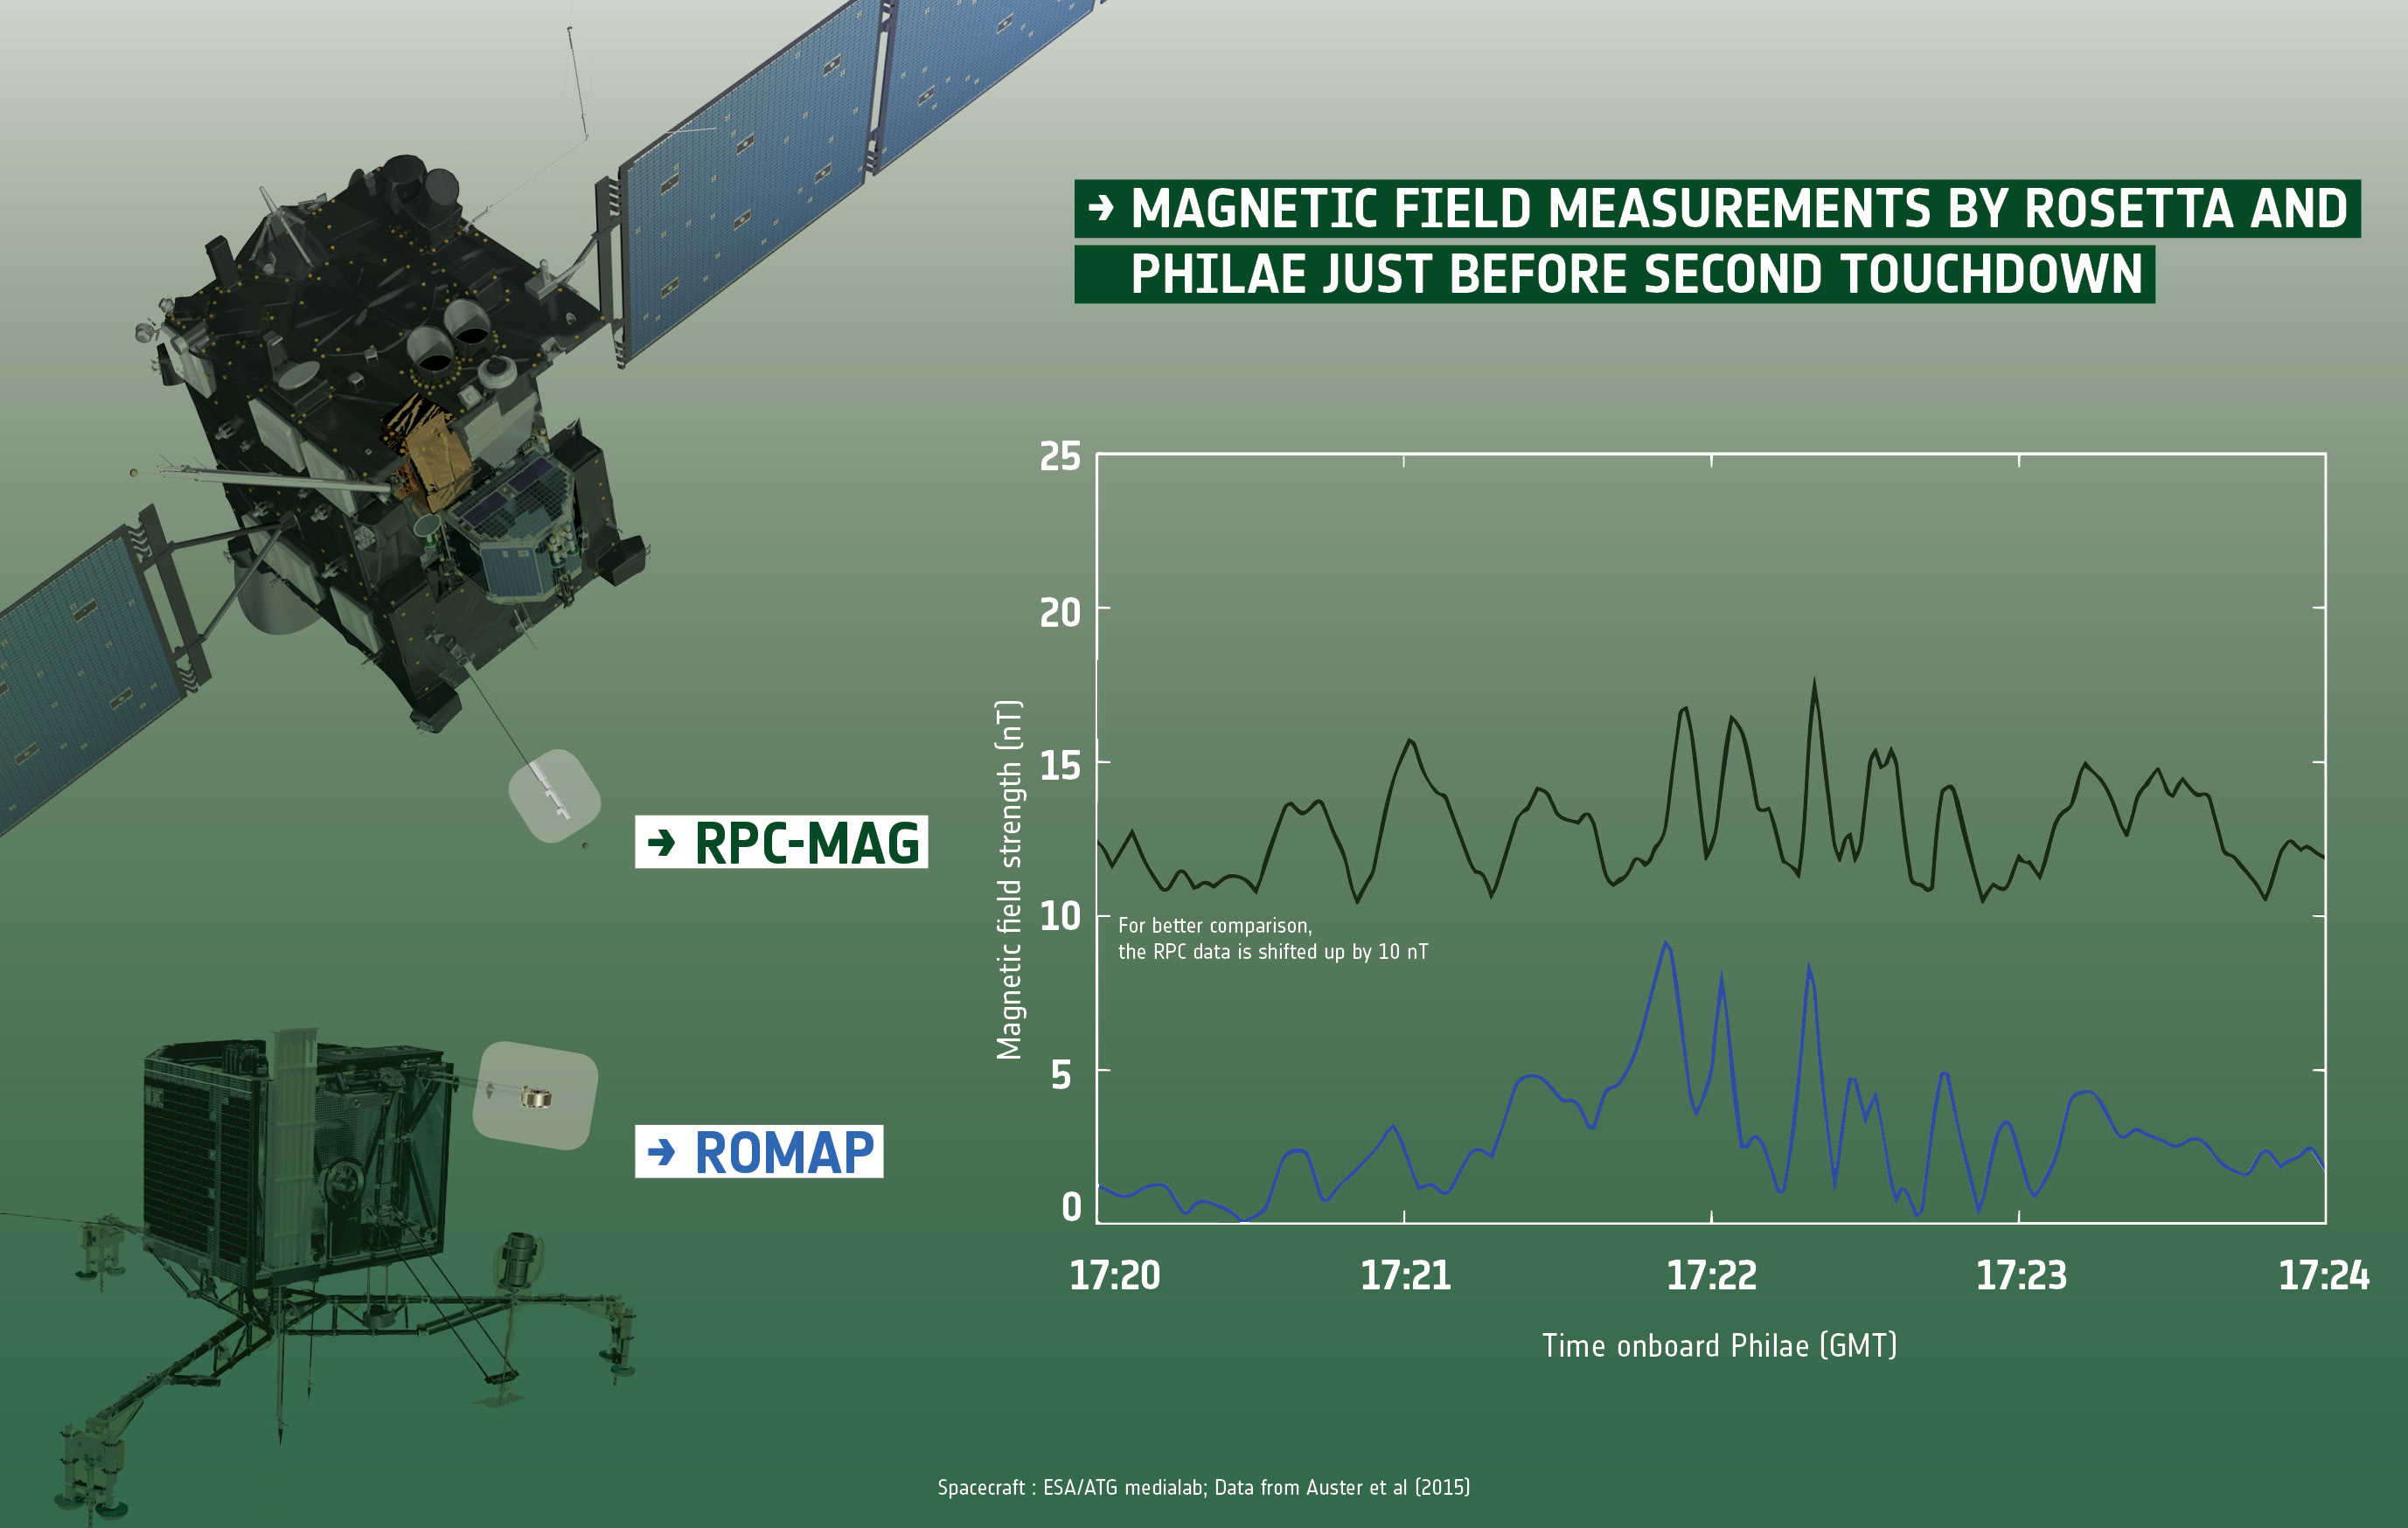 Rosetta_and_Philae_investigate_magnetic_properties_of_Comet_67P_C-G